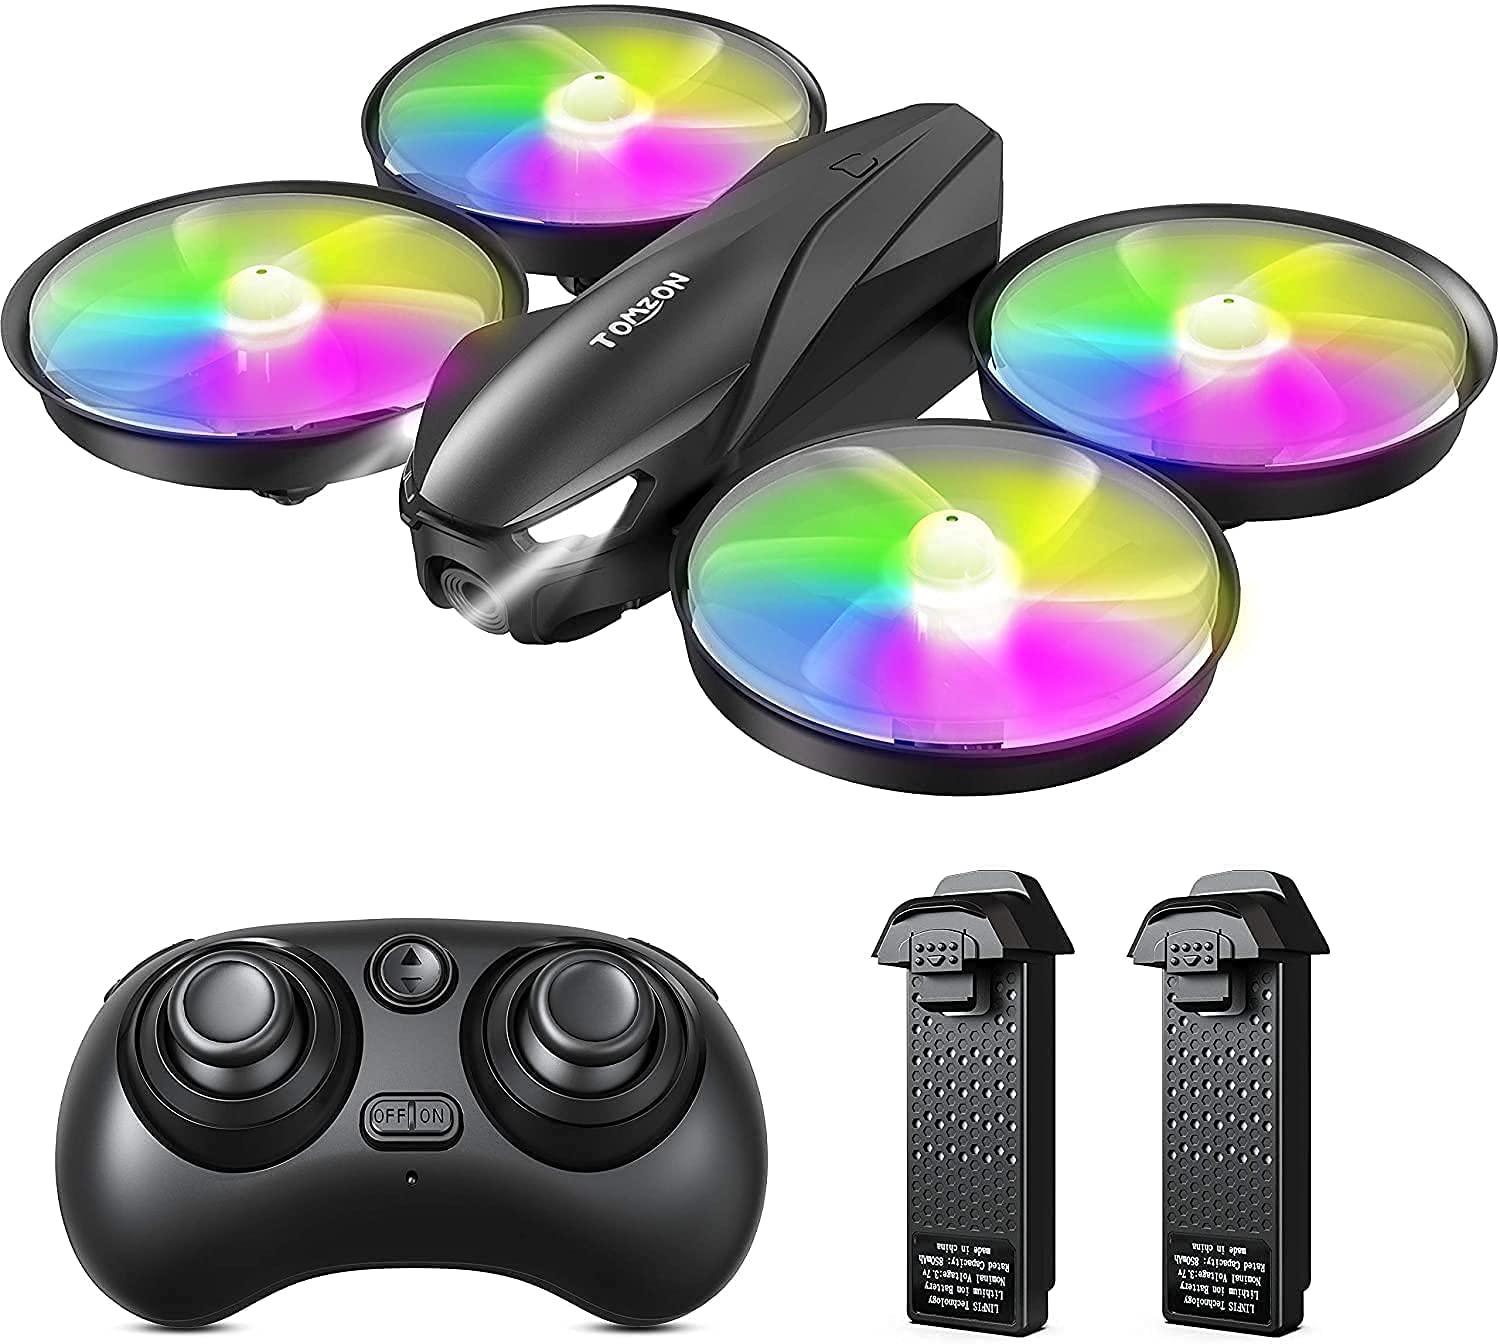 Tomzon Drone per Bambini LED Colorati Giochi e giocattoli -25% Sconti e Offerte